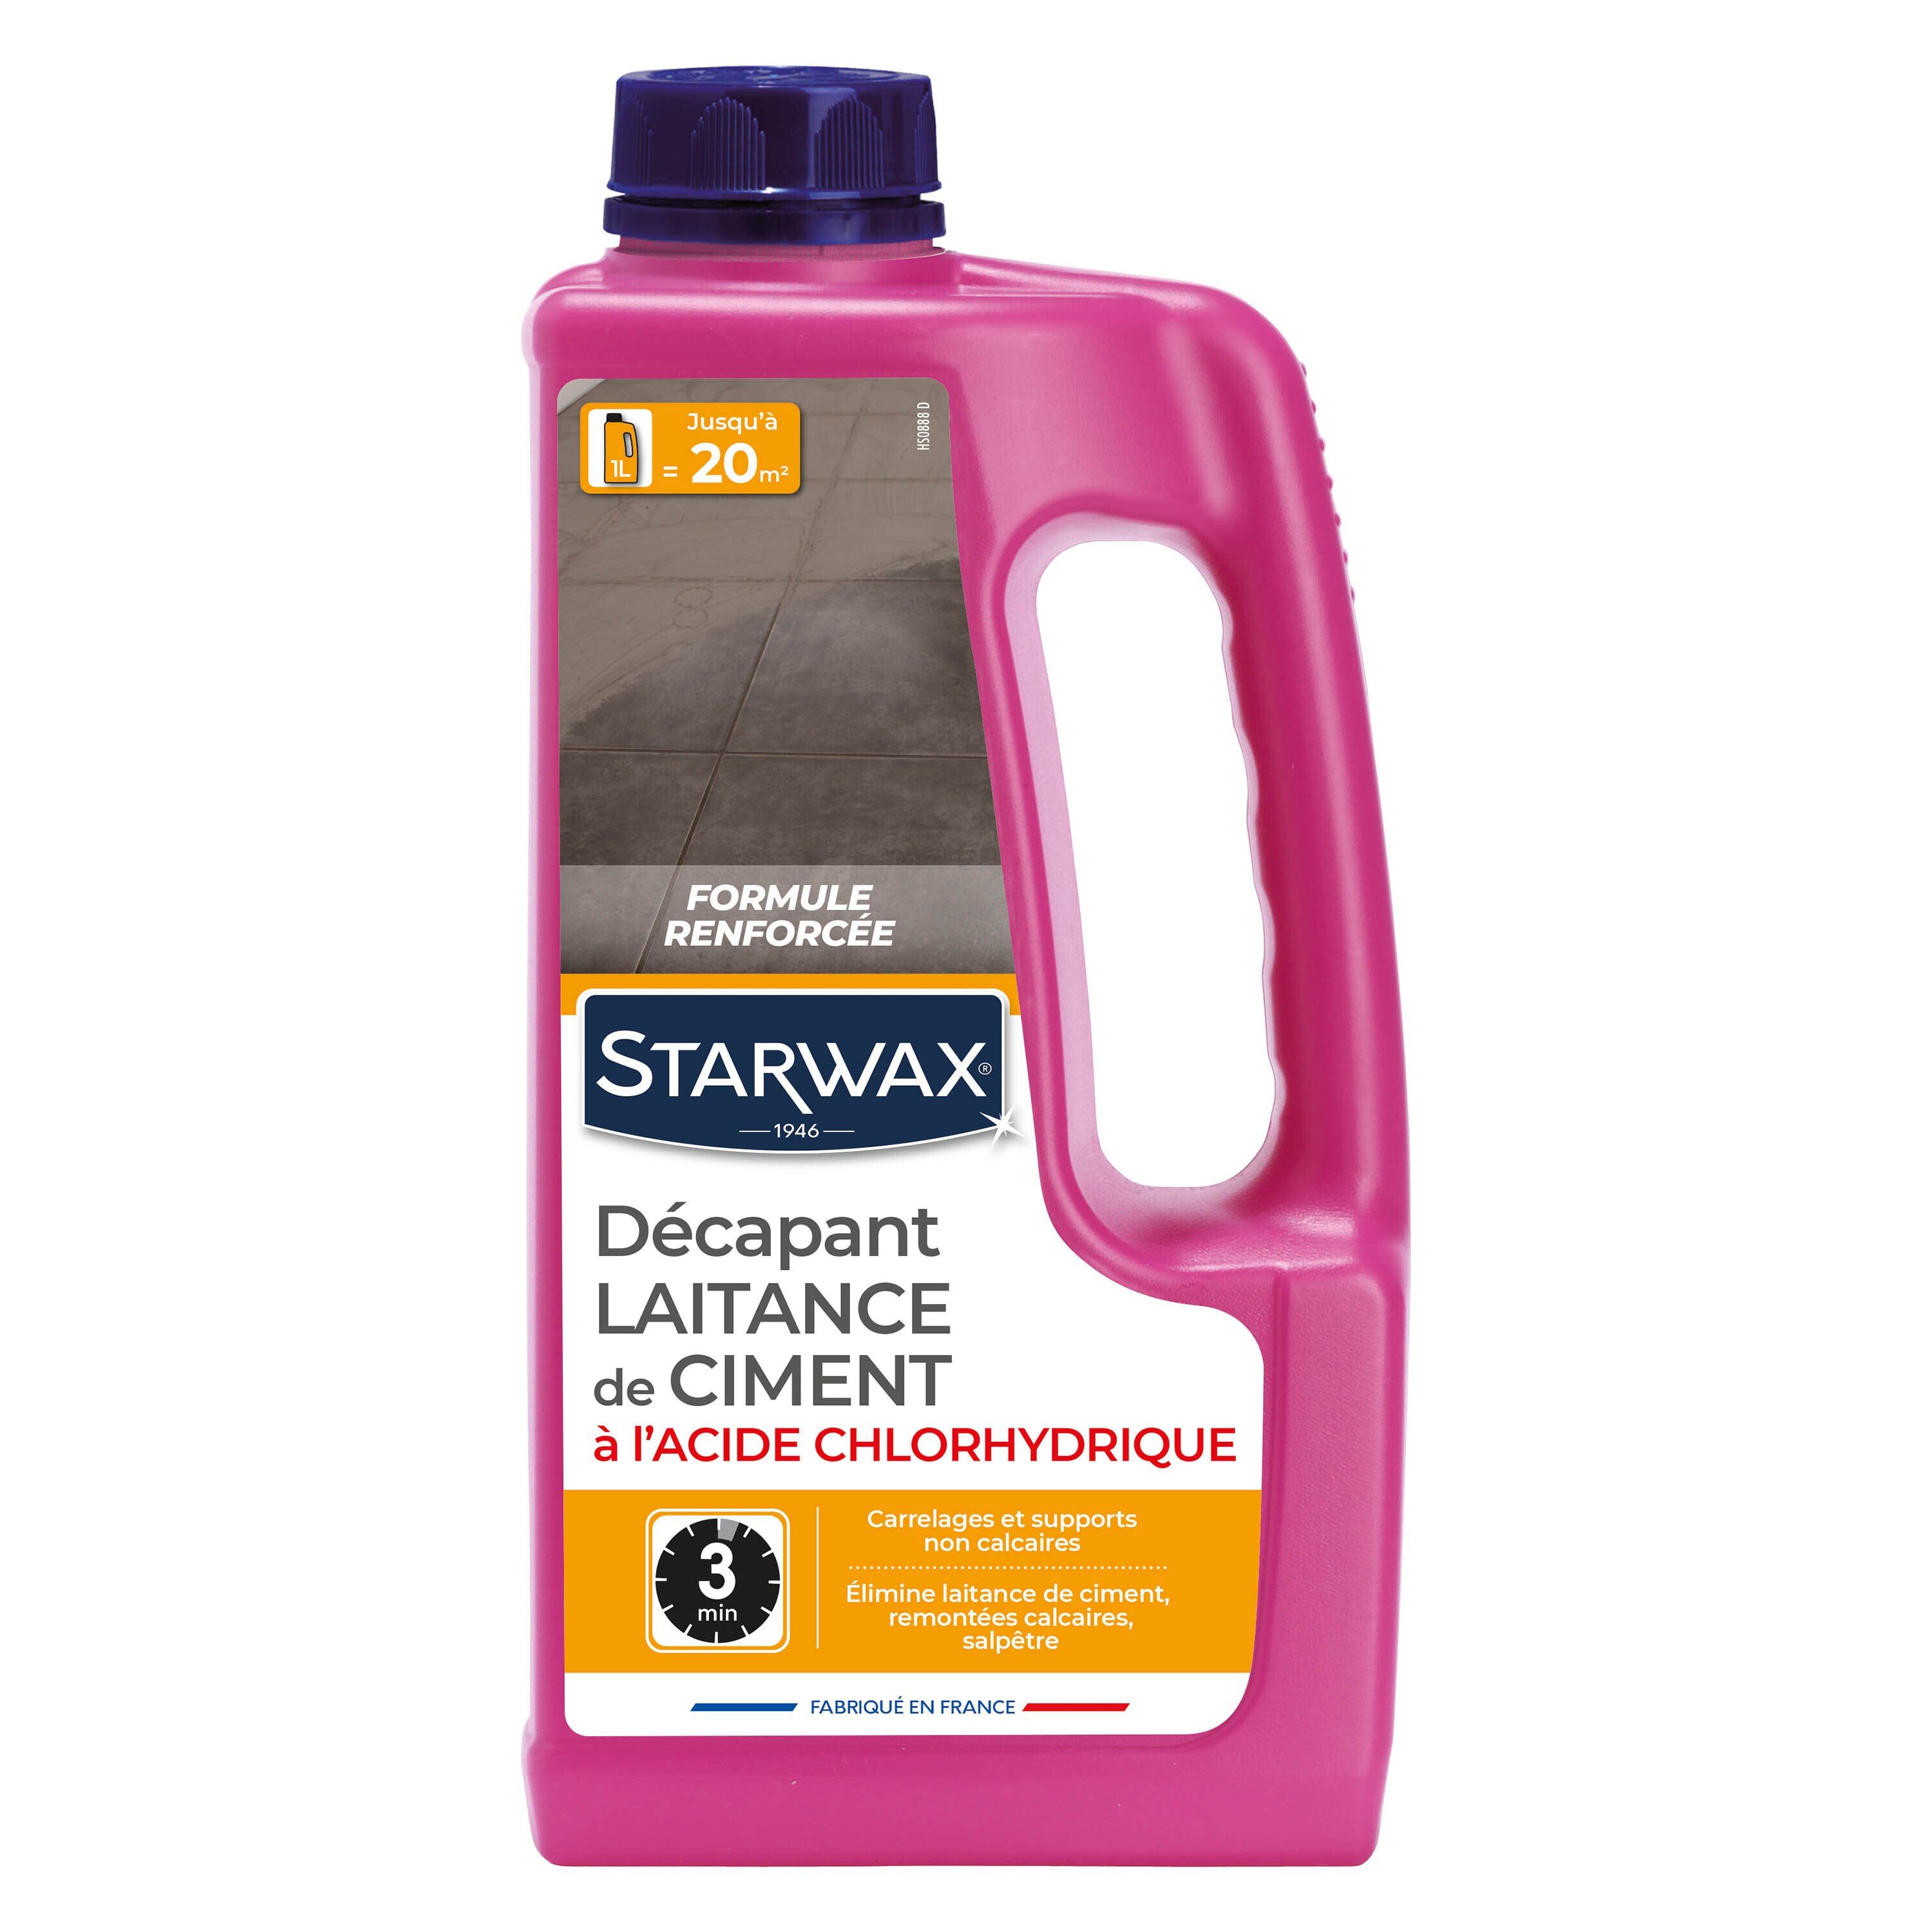 Décapant laitance de ciment - Starwax